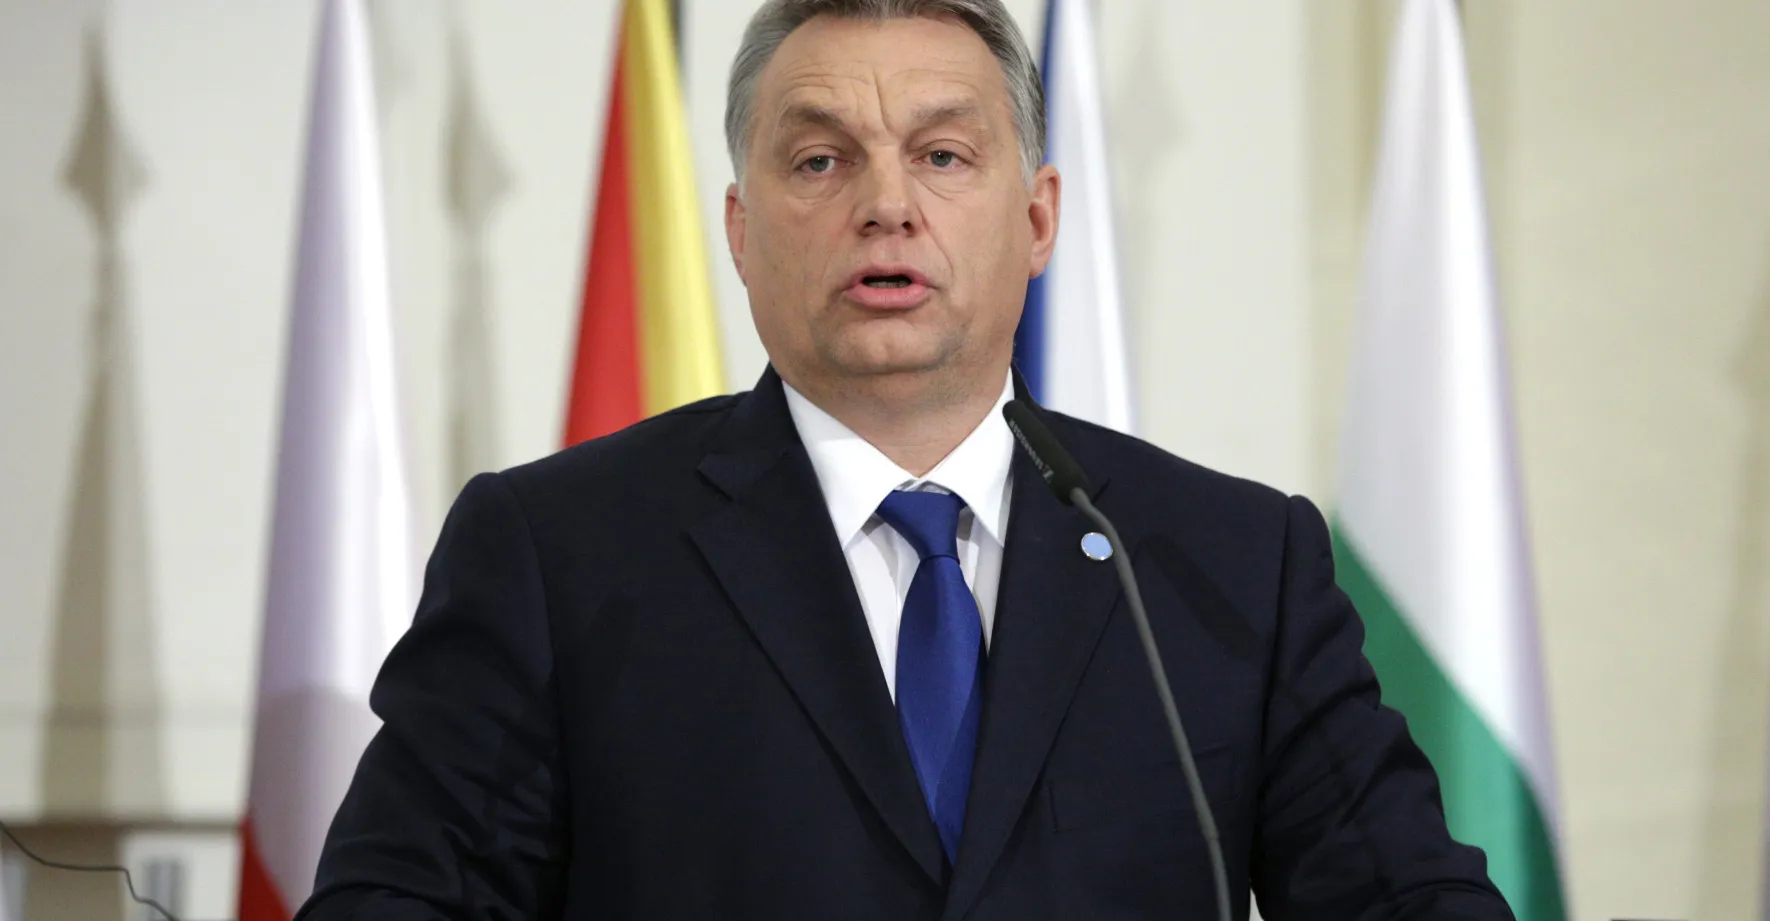 Orbán vyzval poslance Fidesz k podpoře rozšíření NATO. Někteří prý nejsou nadšeni